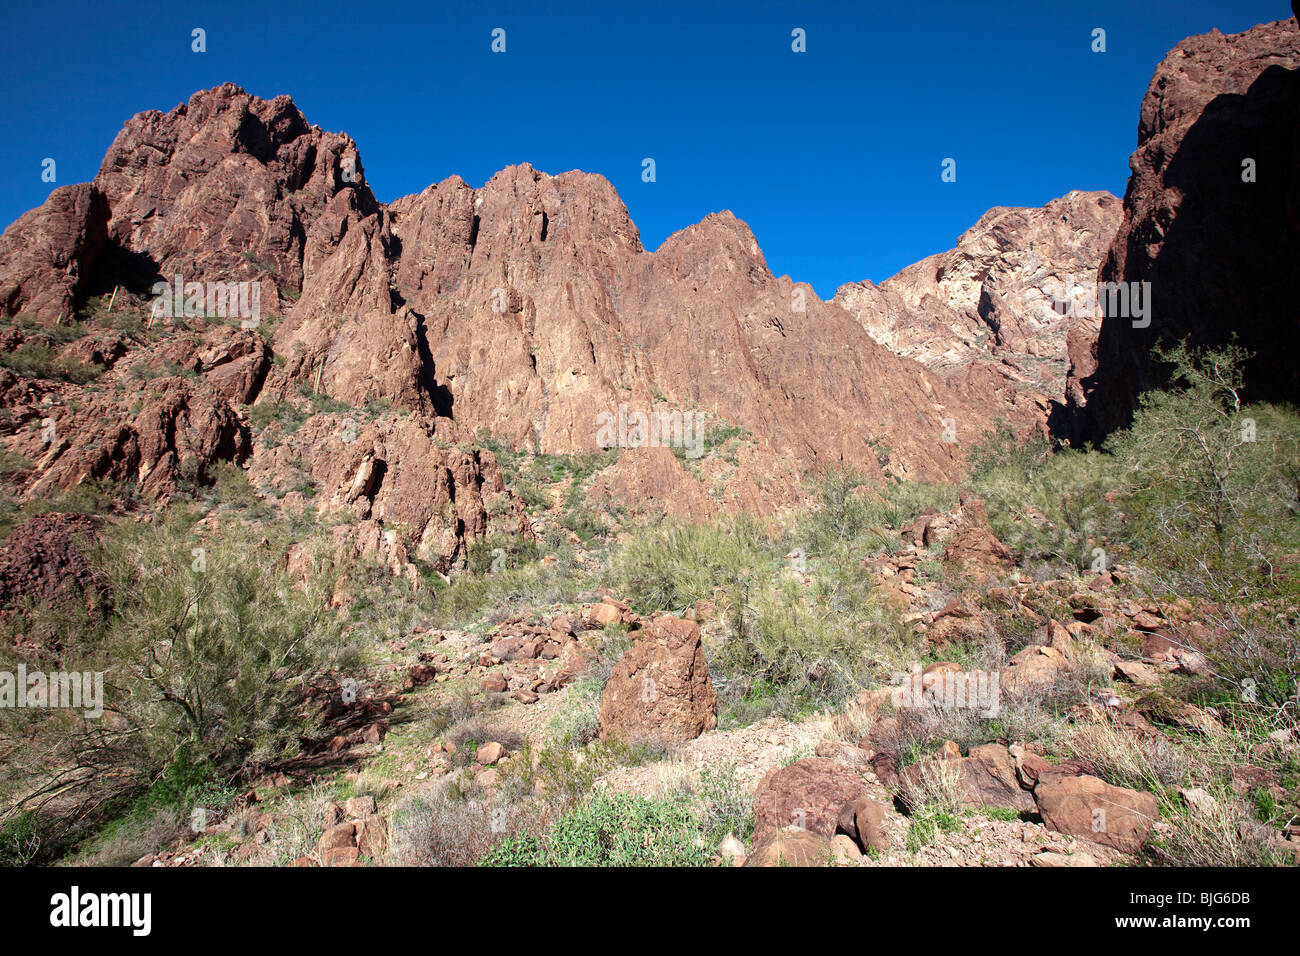 La rhyolite volcanique dans la région de Palm Canyon, KOFA Wildlife Refuge, Arizona Banque D'Images